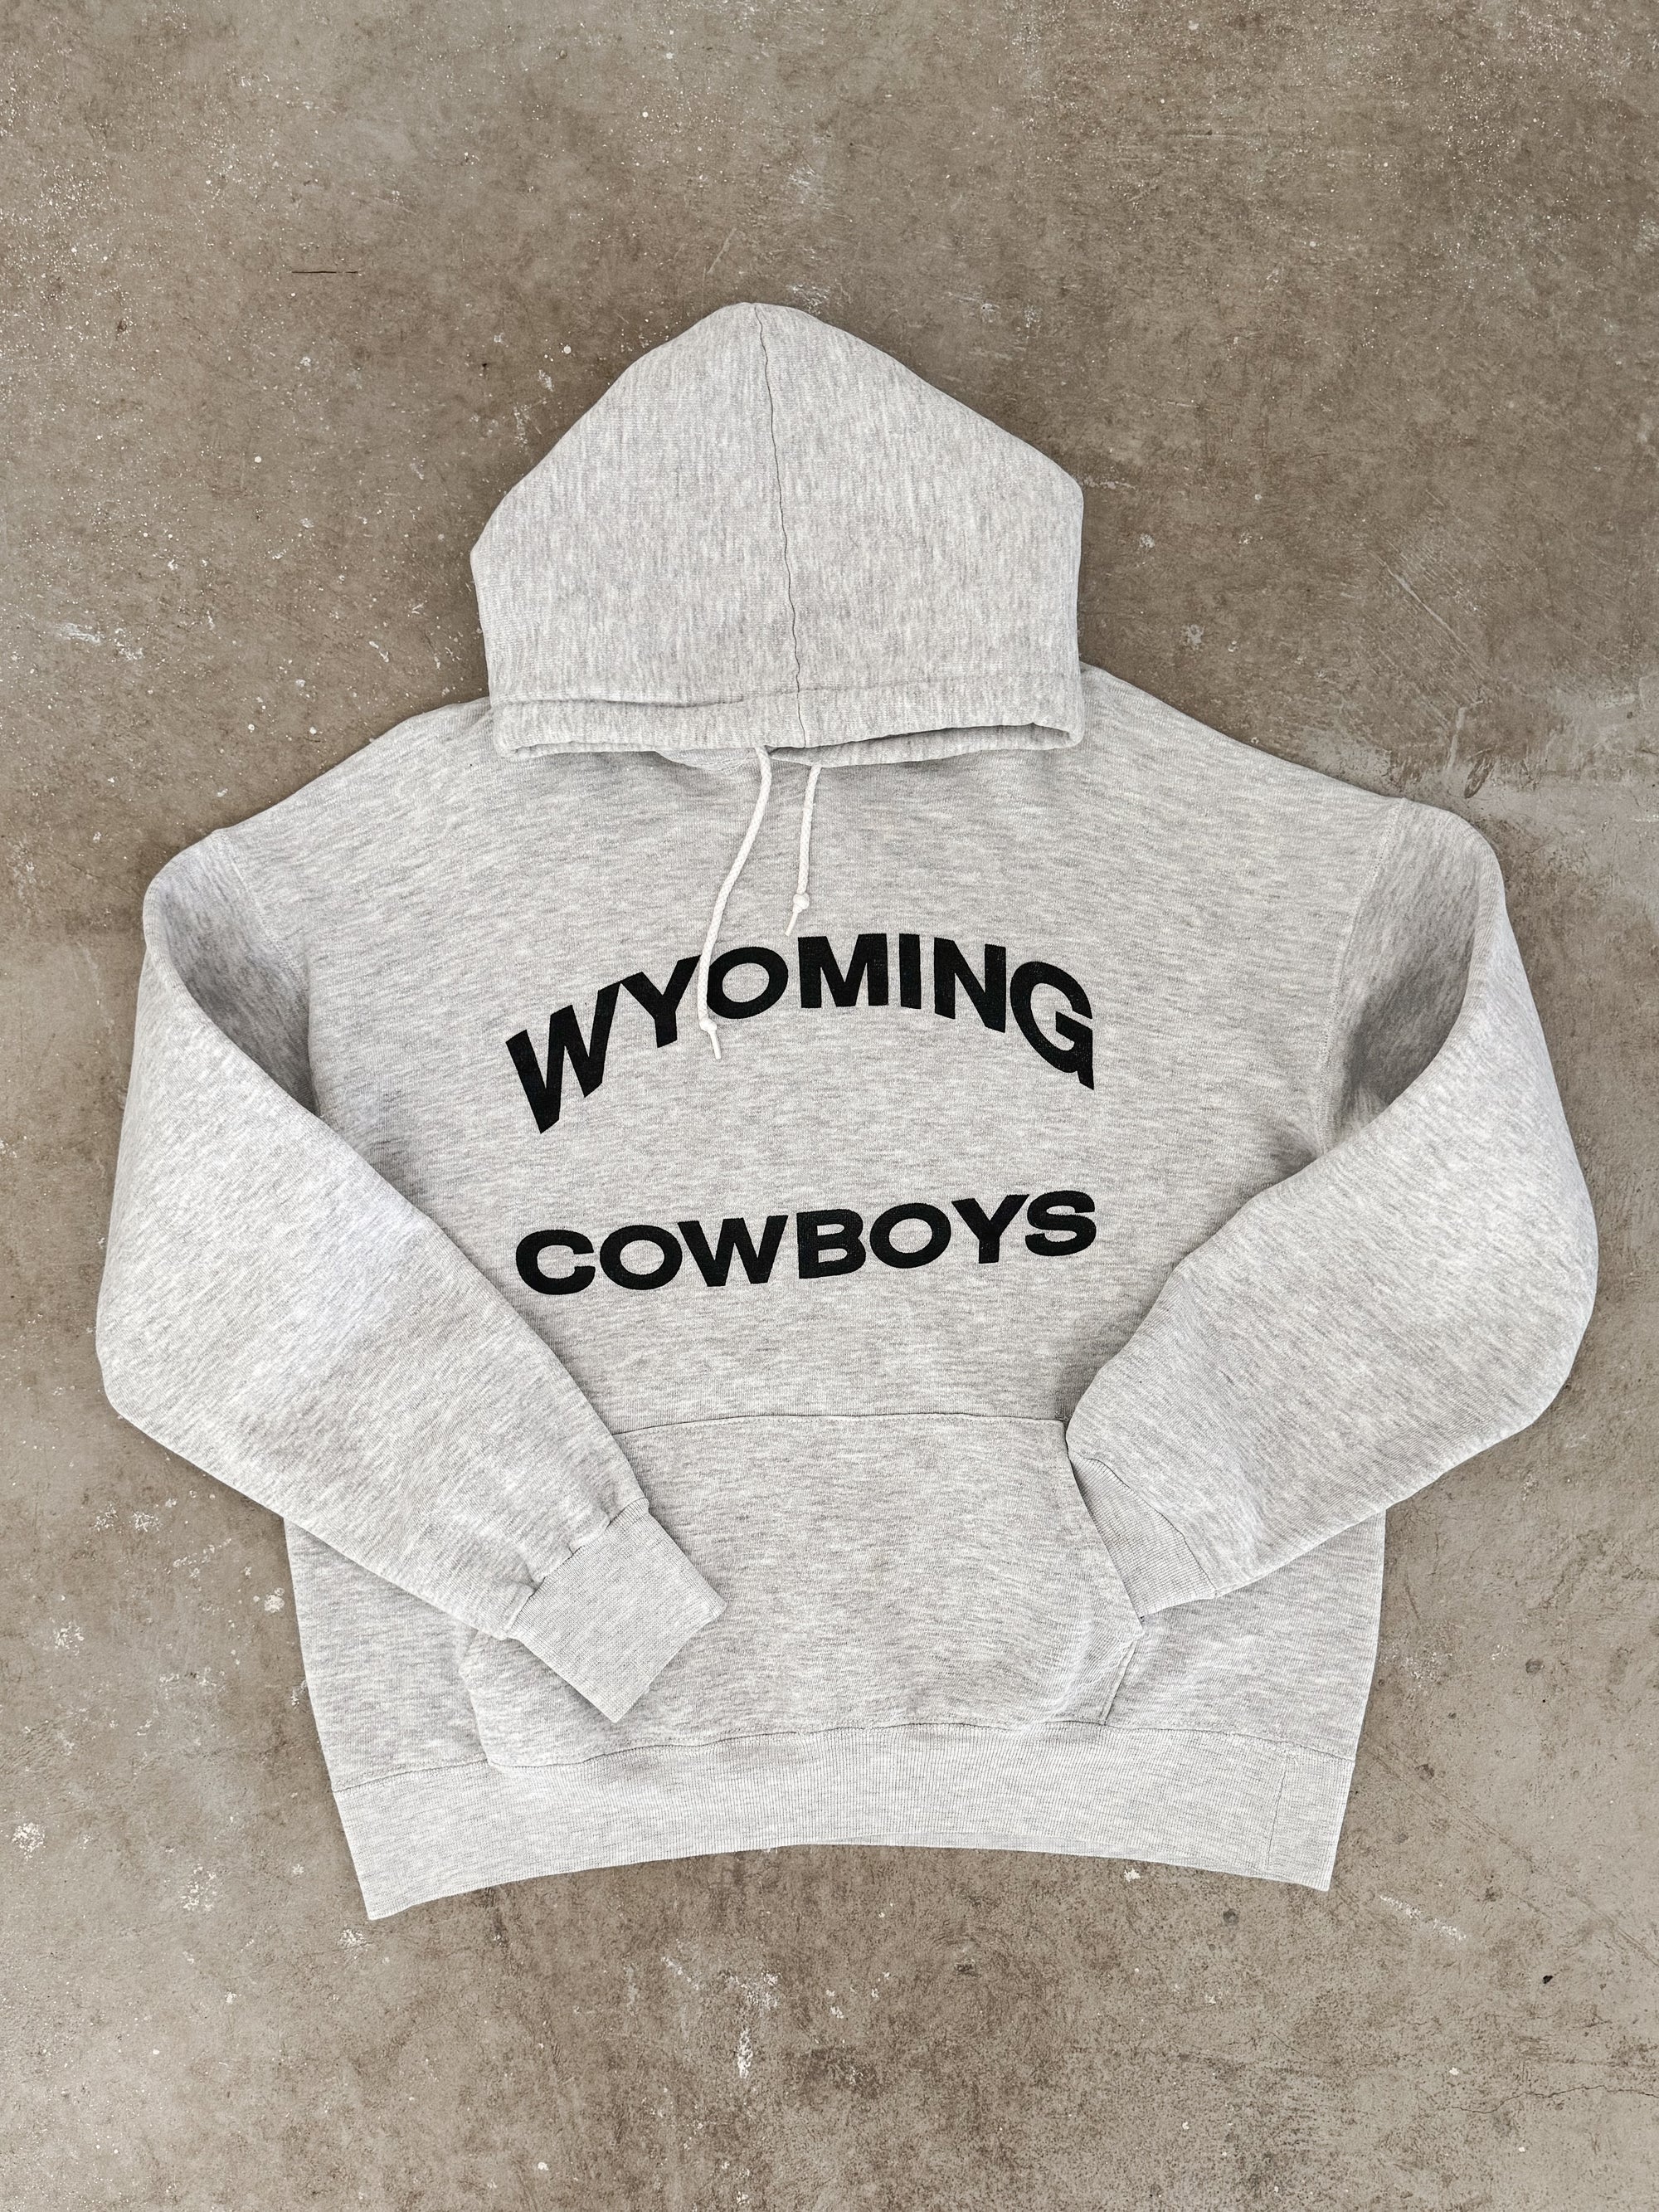 1980s "Wyoming Cowboys" Hoodie (L)